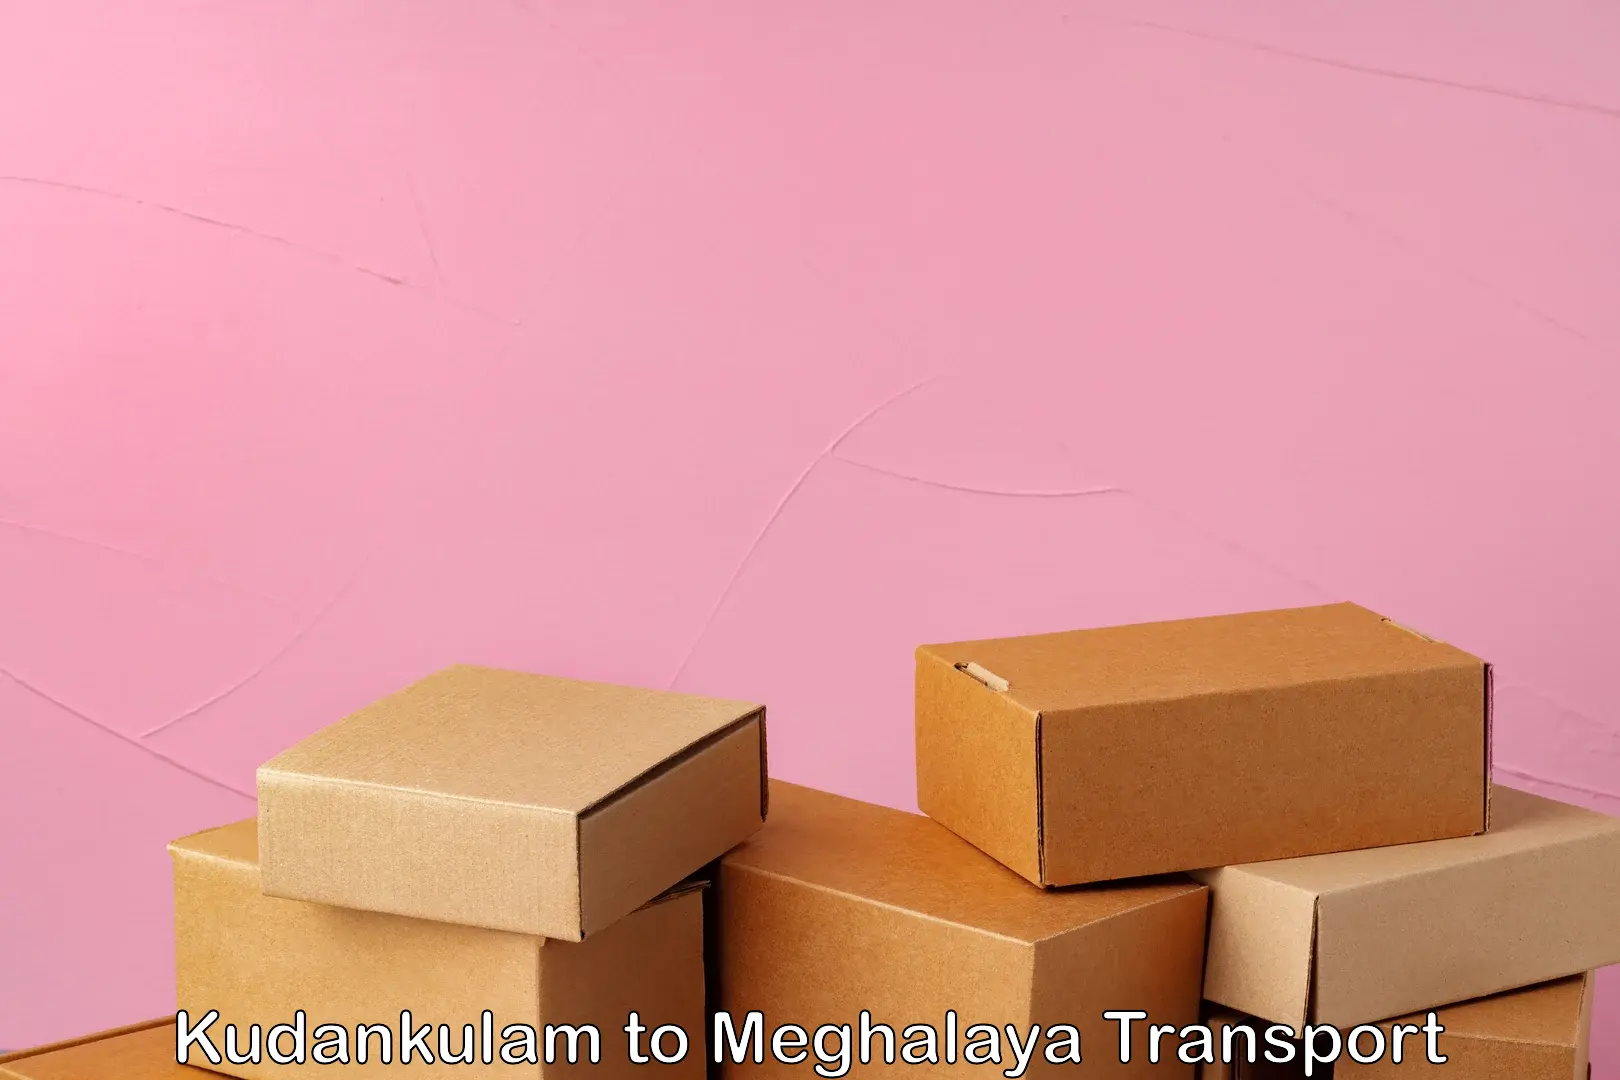 Transport in sharing Kudankulam to Meghalaya